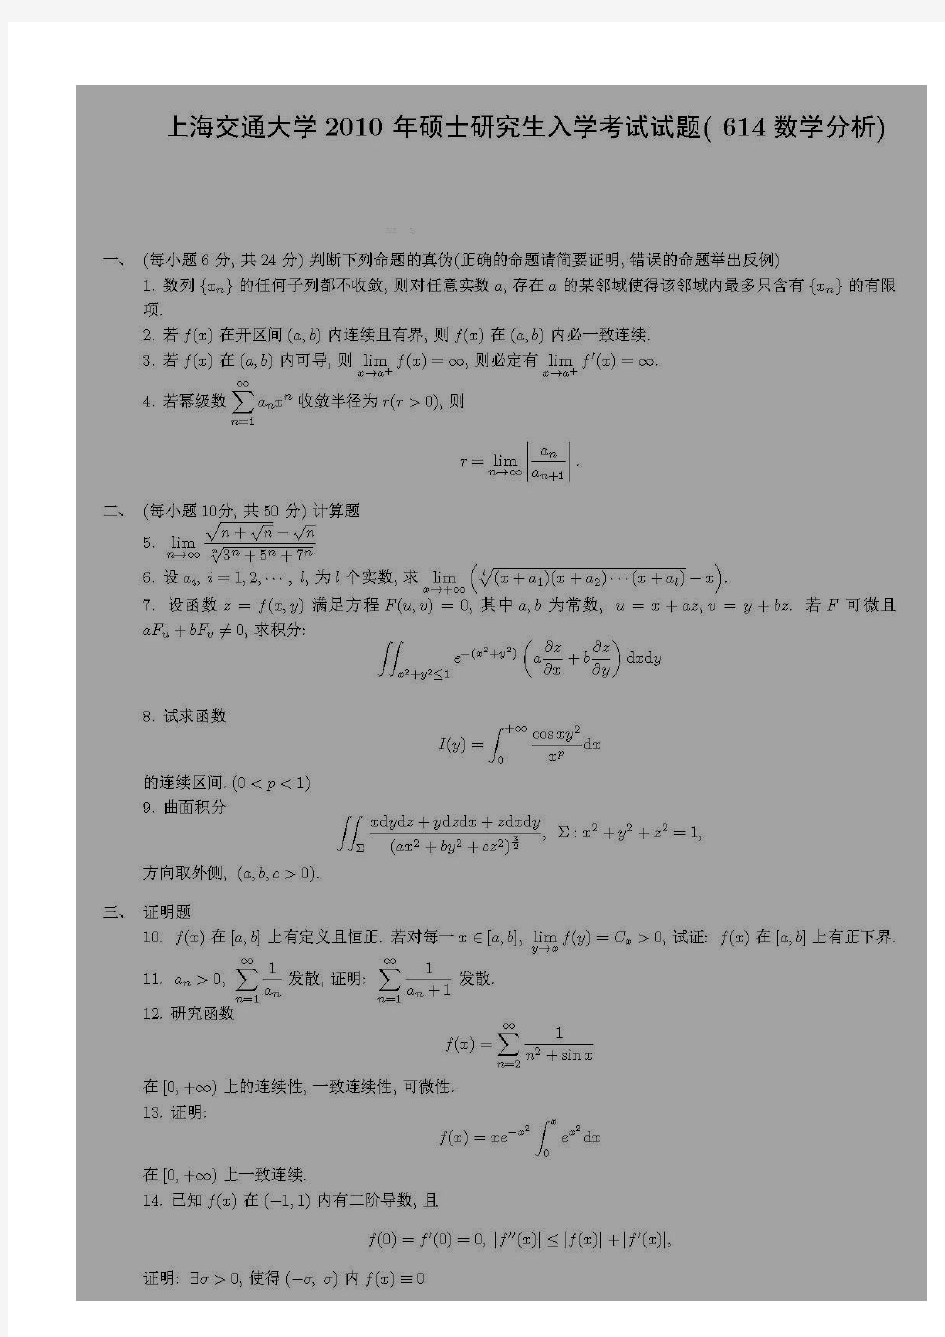 上海交通大学数学专业考研真题(数学分析)